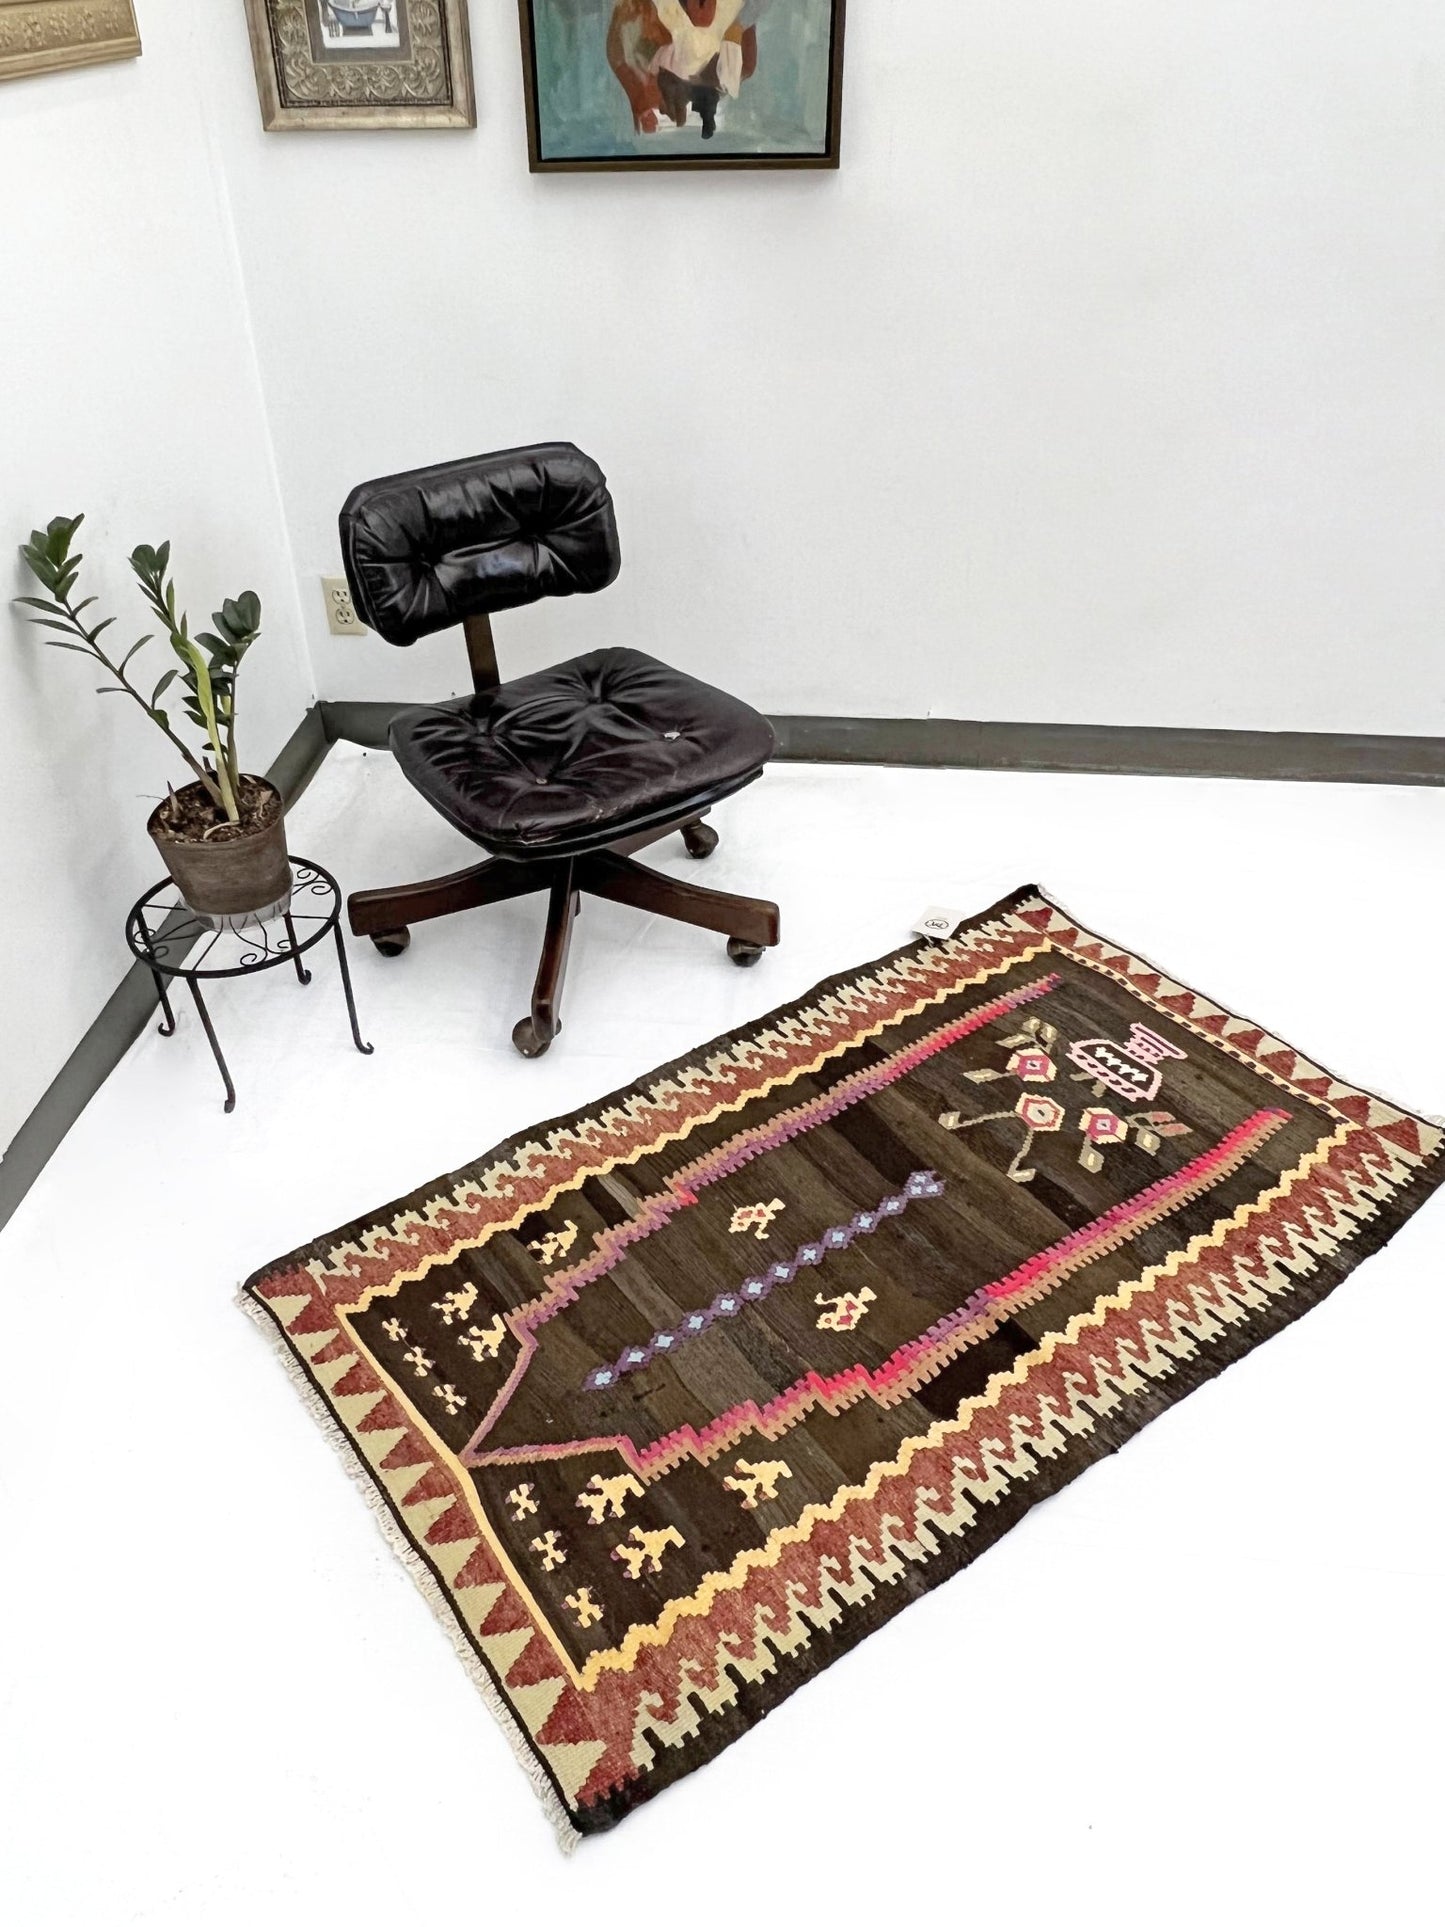 Turkish mini rug. Oriental rug shop san francisco bay area